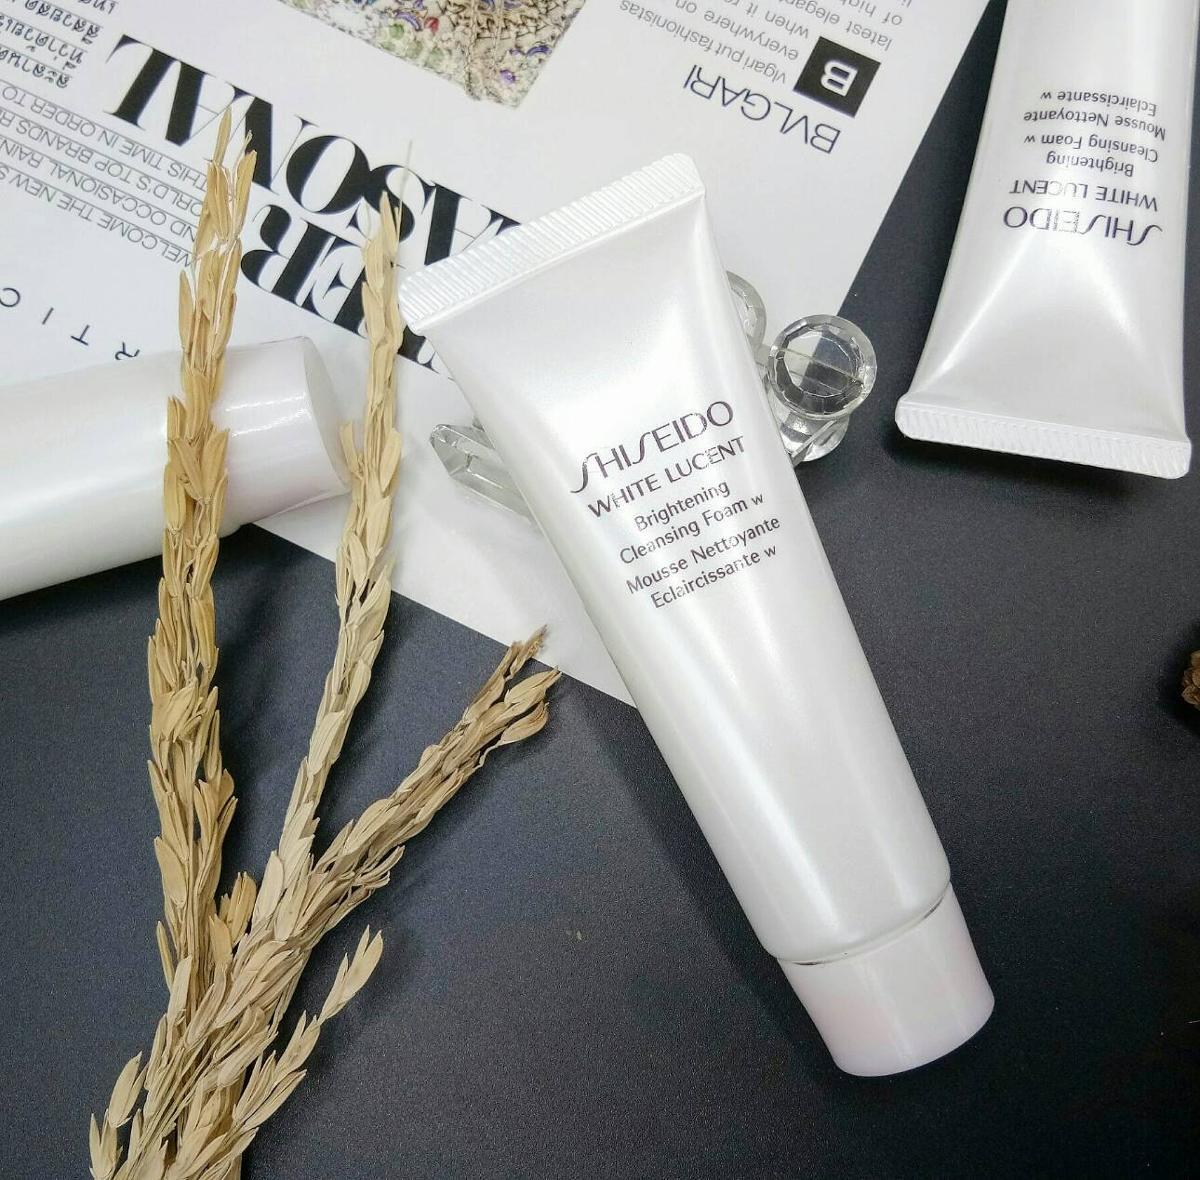 Sữa rửa mặt trắng da Shiseido có mùi thơm nhẹ dịu cùng khả năng làm sạch da hiệu quả sau mỗi lần sử dụng